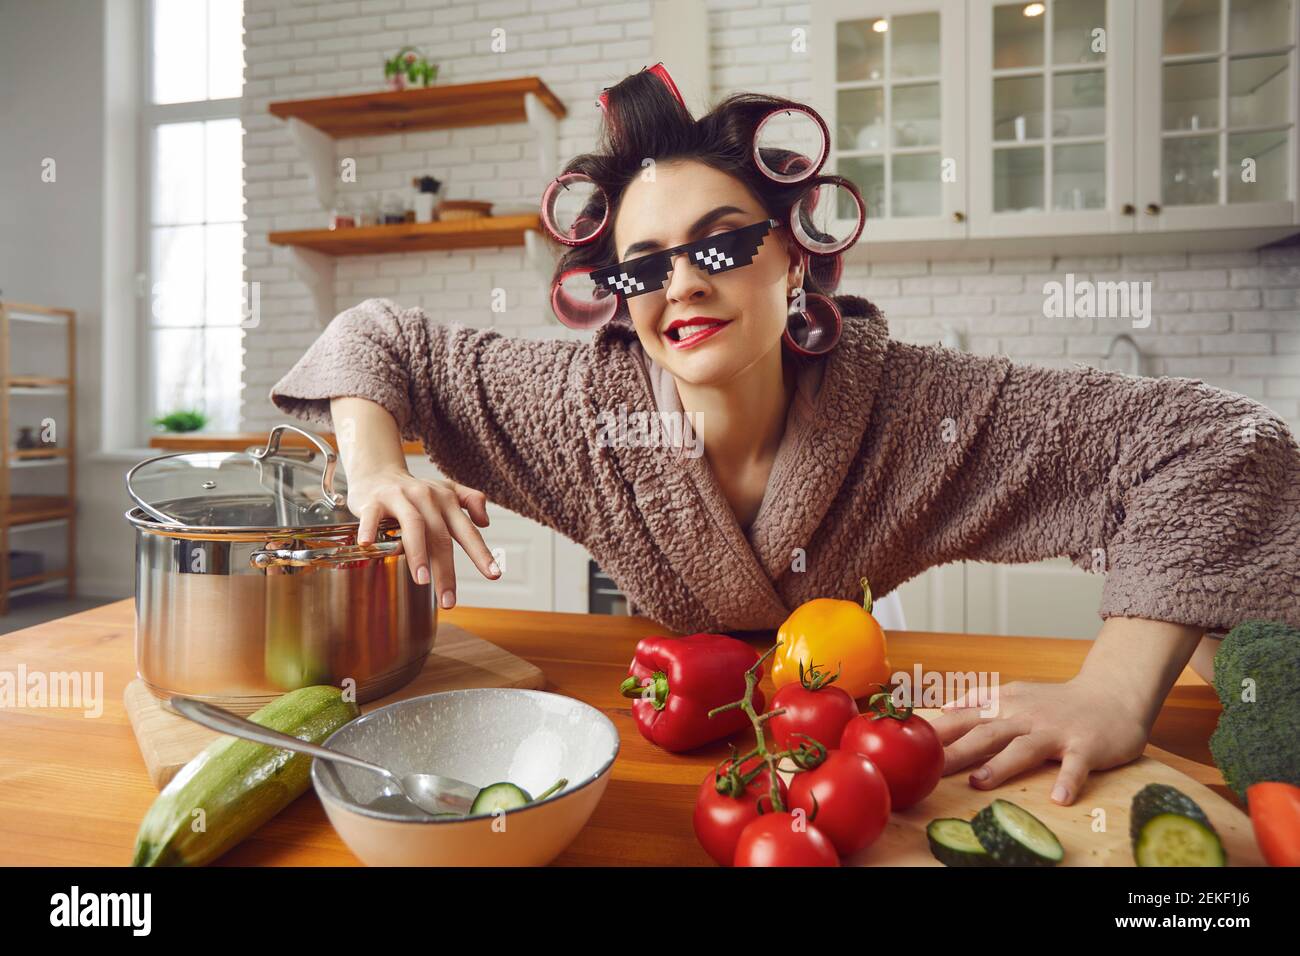 Lustige und schöne verrückte Frau im Haar Lockenwickler und Bademantel  Vorbereitung Frühstück in der Küche Stockfotografie - Alamy